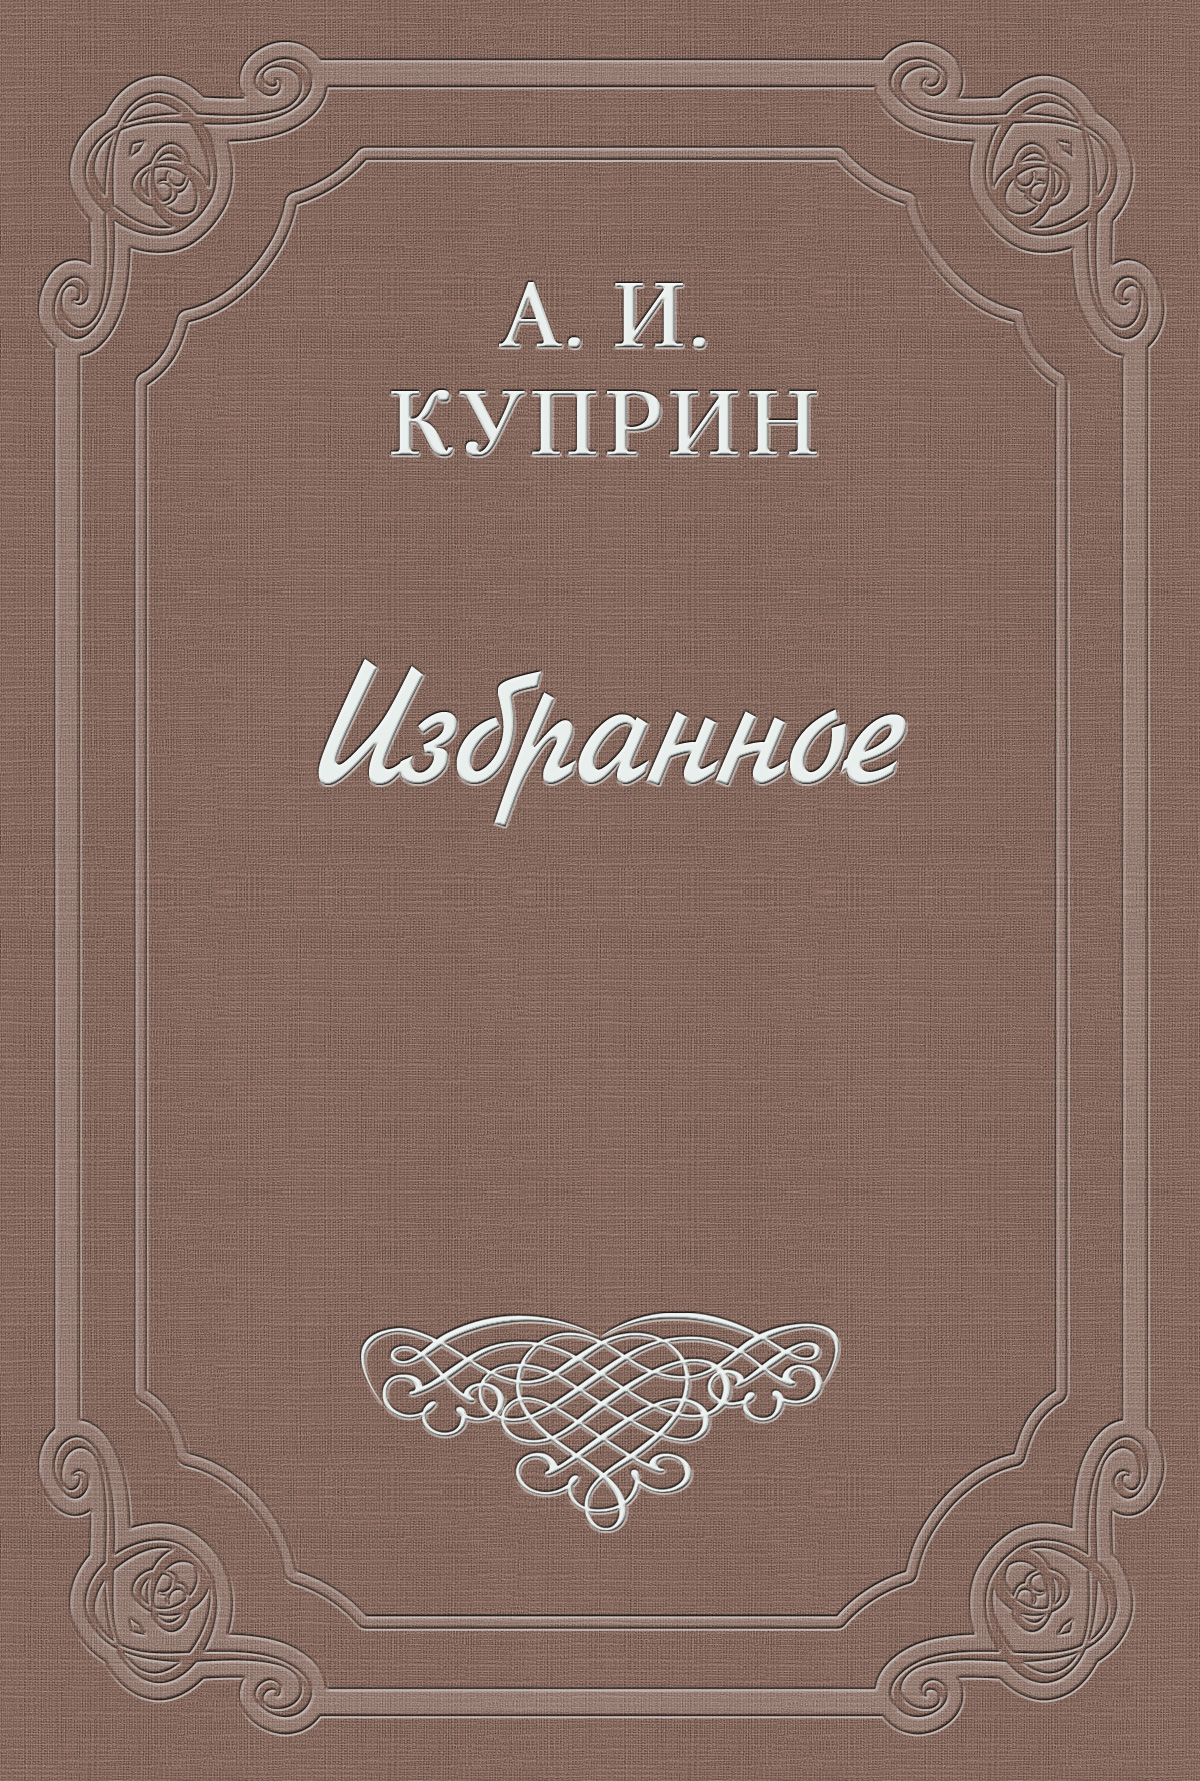 Книга О Гоголе из серии , созданная Александр Куприн, может относится к жанру Публицистика: прочее. Стоимость электронной книги О Гоголе с идентификатором 2548585 составляет 5.99 руб.